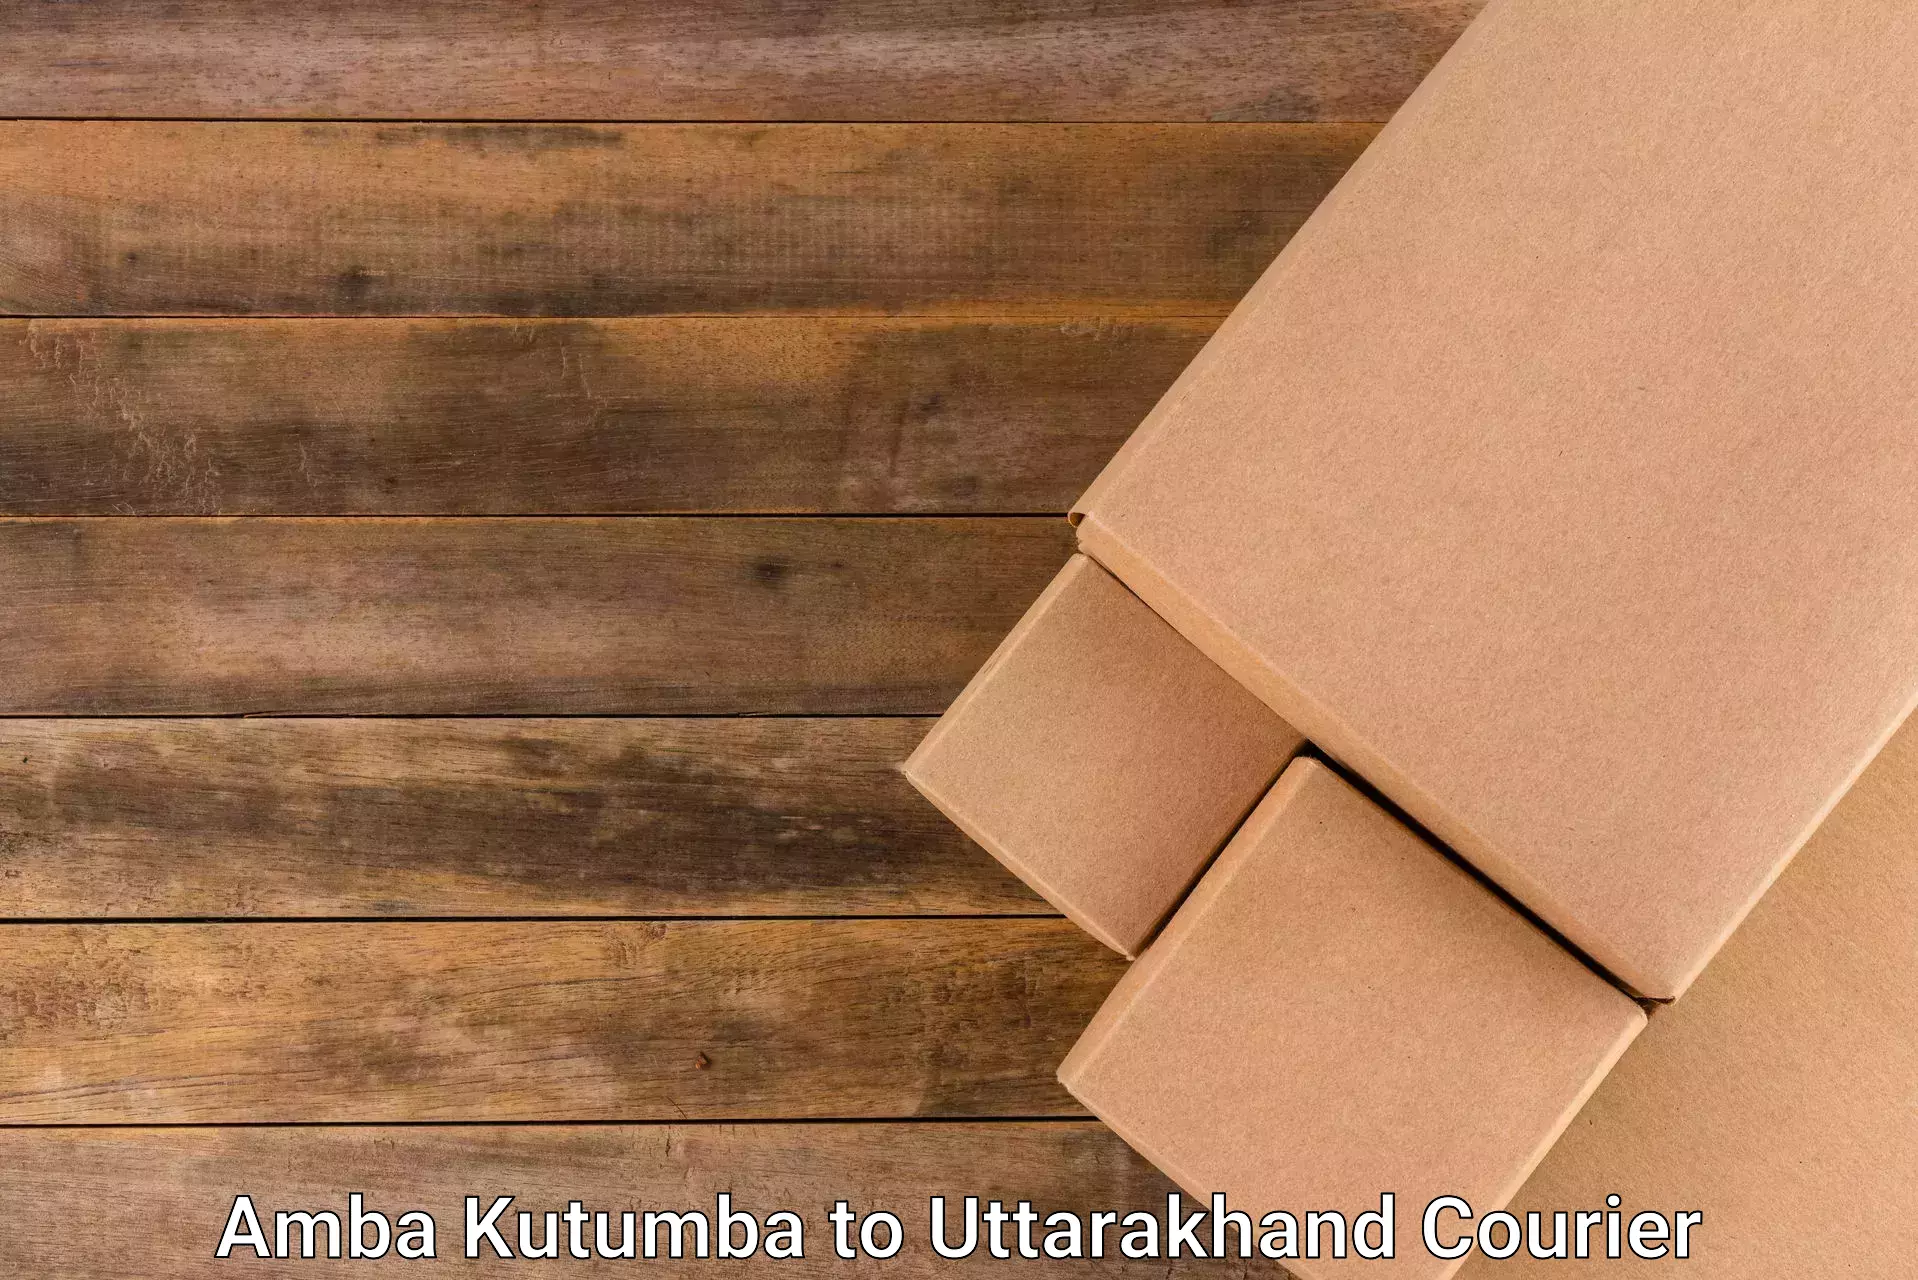 Secure package delivery Amba Kutumba to Uttarakhand